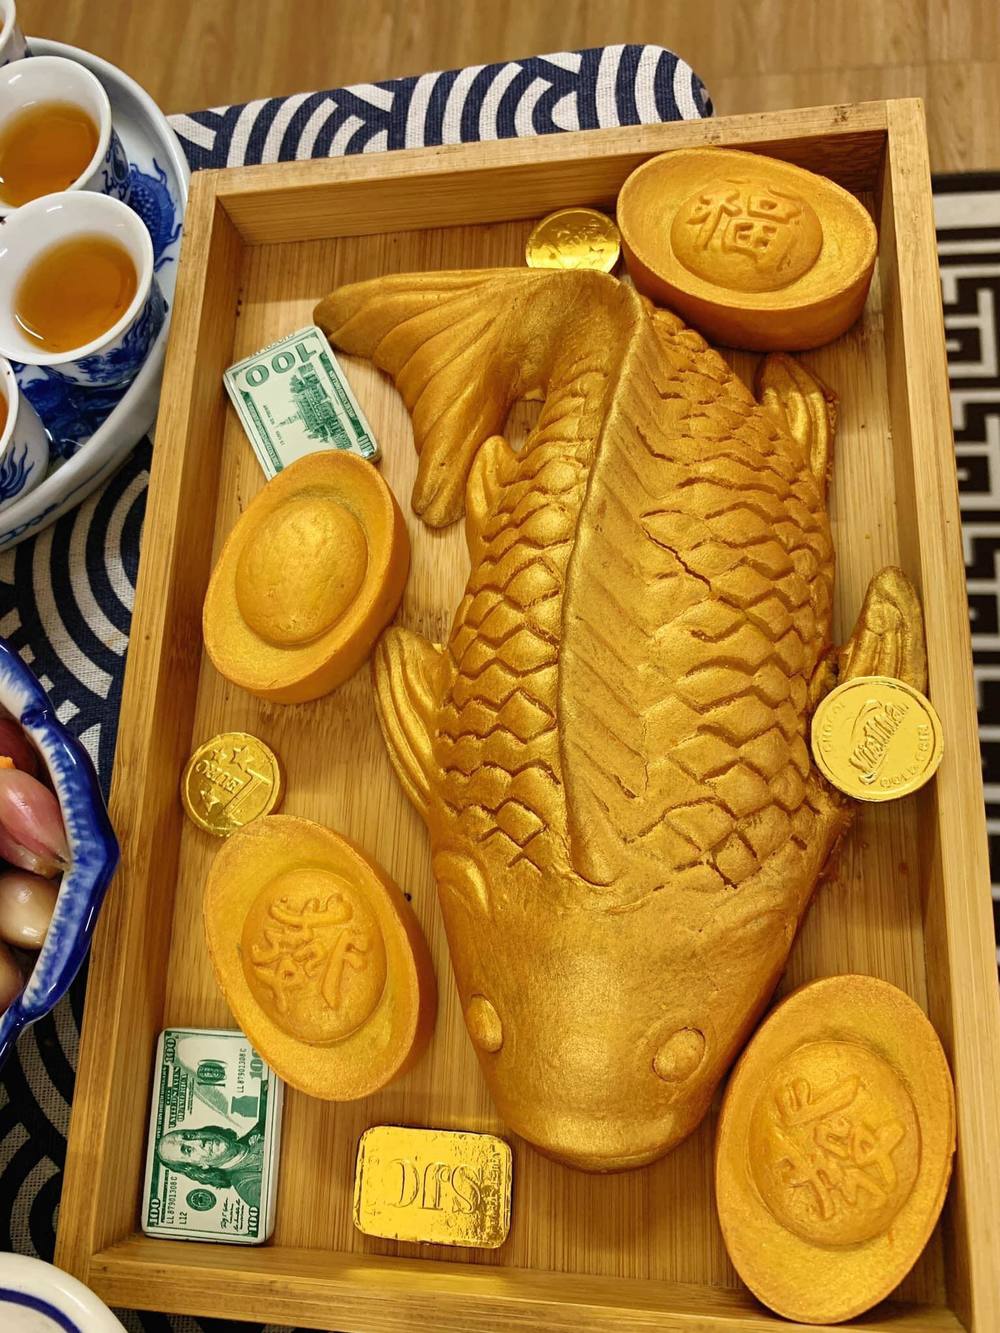 
Một số gia đình làm mâm cúng rất cầu kỳ, dâng cả cá vàng được tạo hình độc lạ (Nguồn: Pinterest)